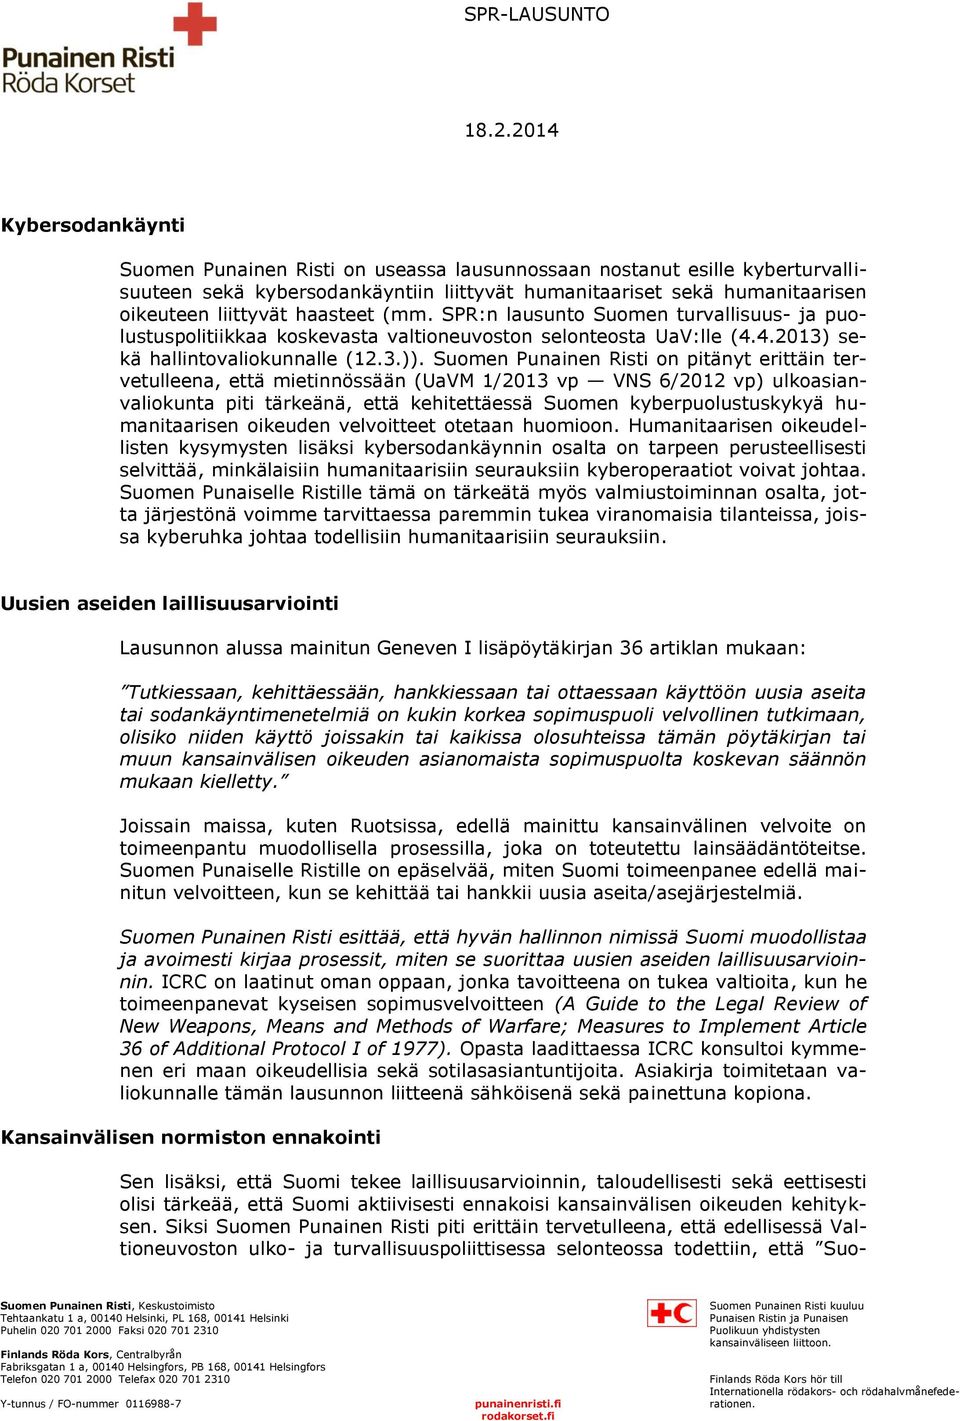 Suomen Punainen Risti on pitänyt erittäin tervetulleena, että mietinnössään (UaVM 1/2013 vp VNS 6/2012 vp) ulkoasianvaliokunta piti tärkeänä, että kehitettäessä Suomen kyberpuolustuskykyä